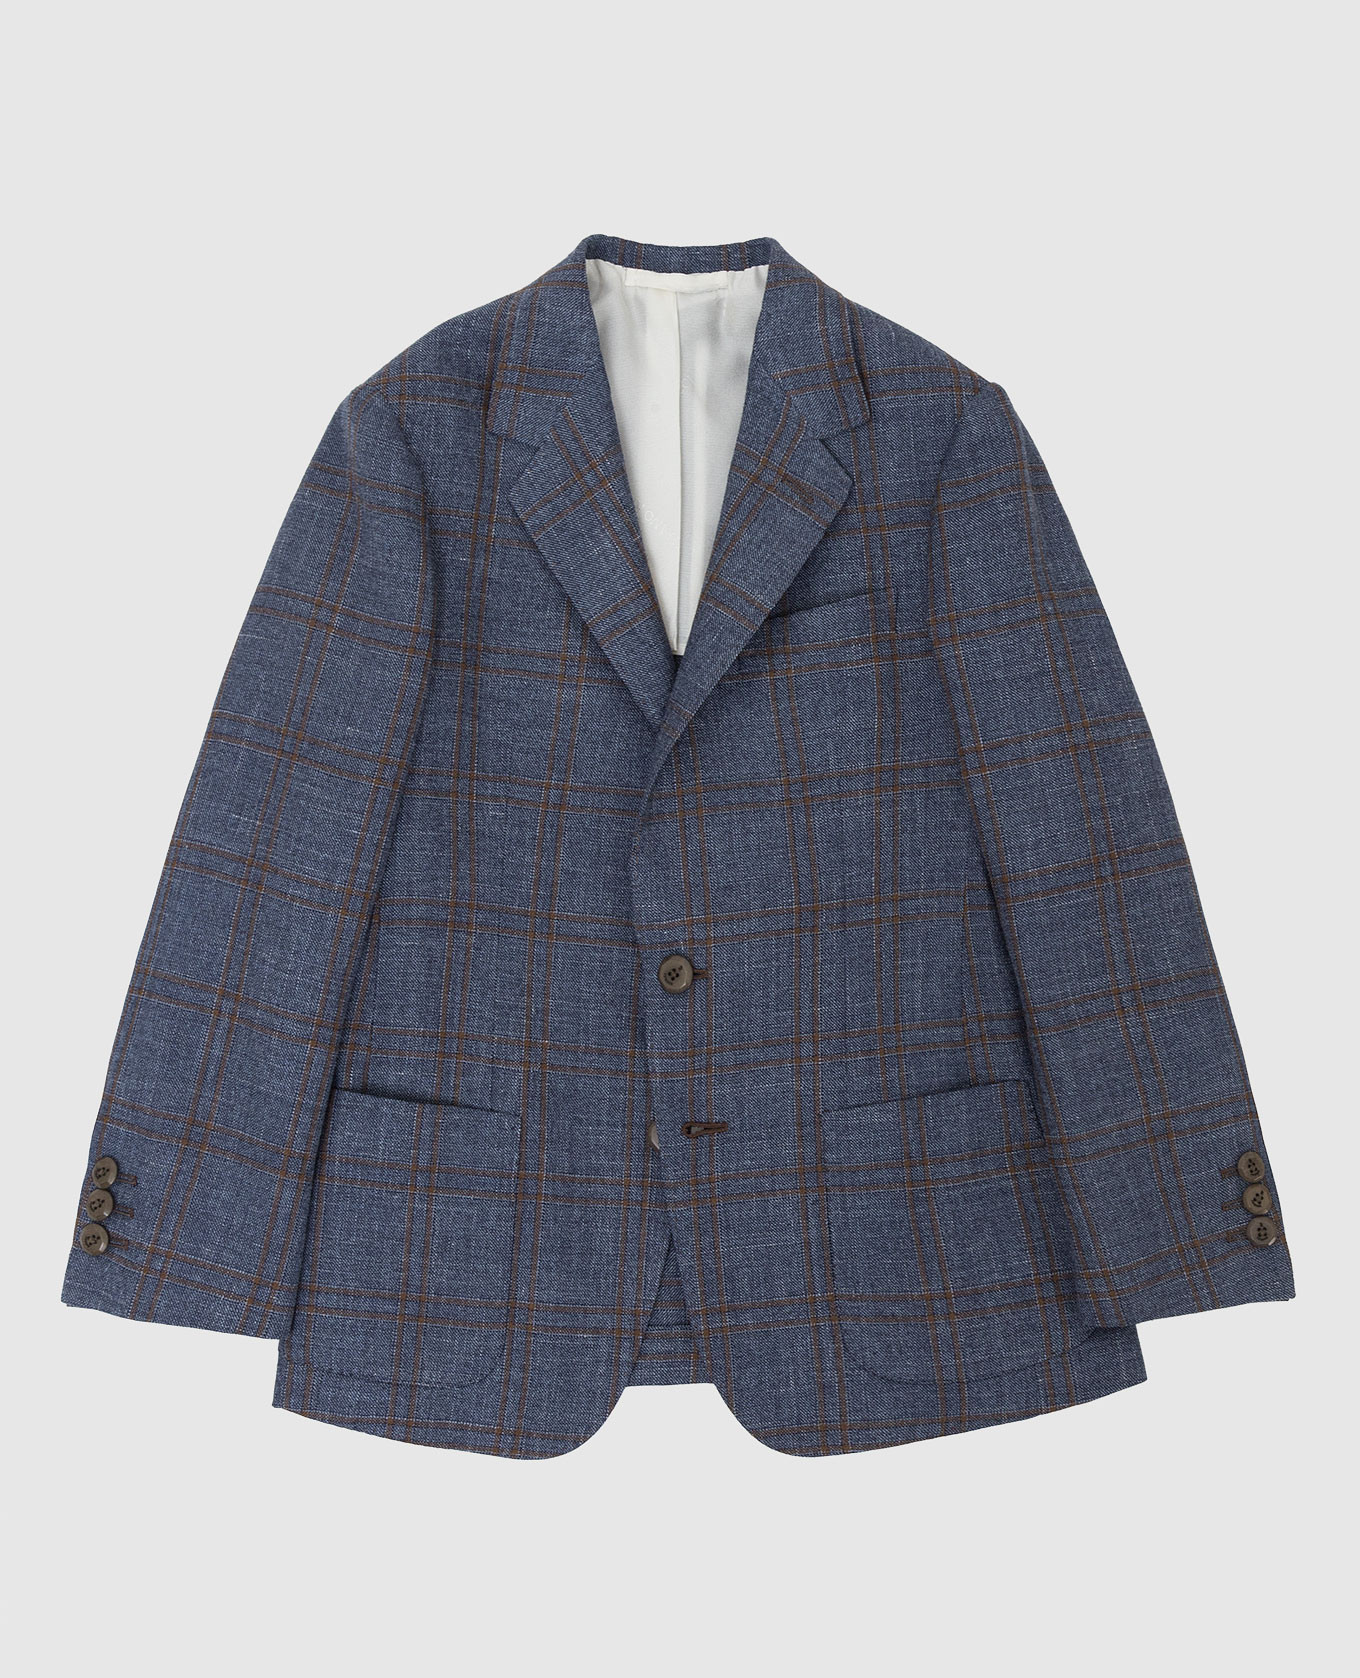 Checked wool, silk and linen children's blue blazer